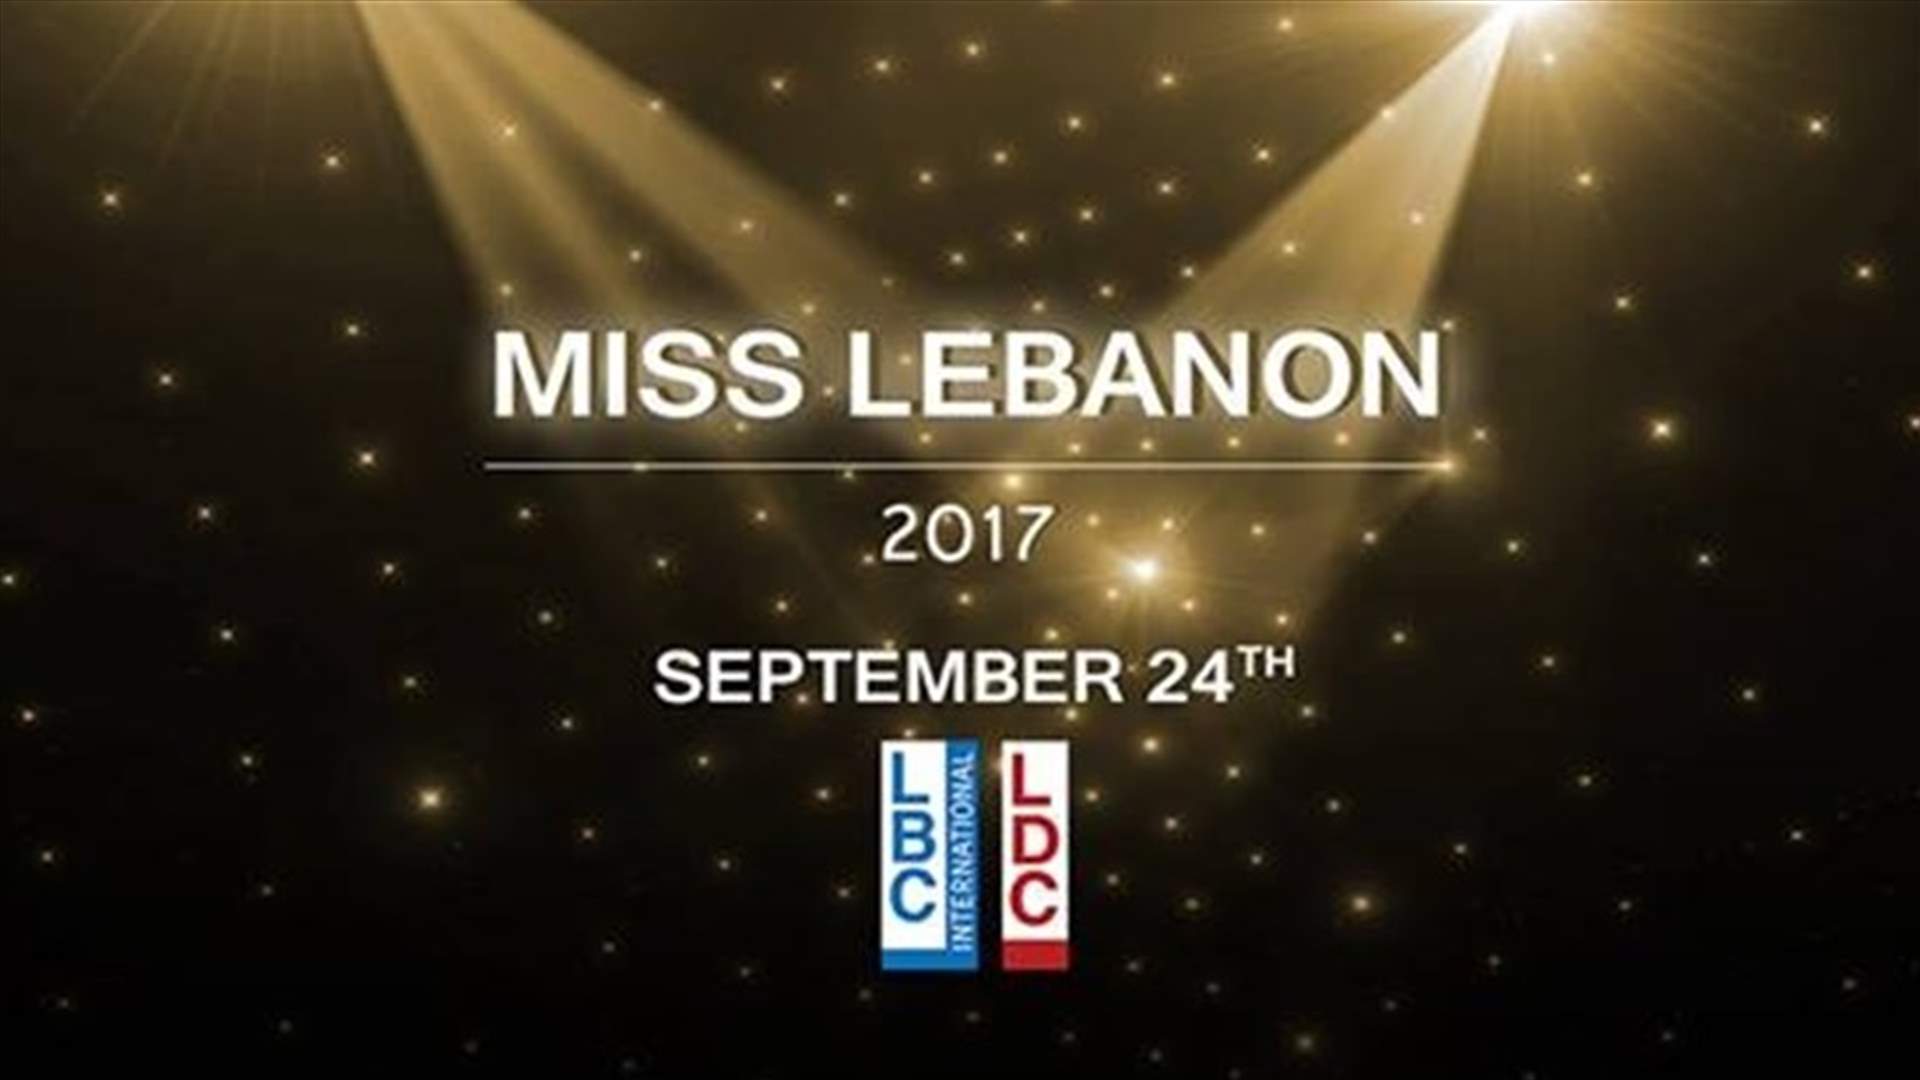 الصور الأولى من كواليس ملكة جمال لبنان 2017